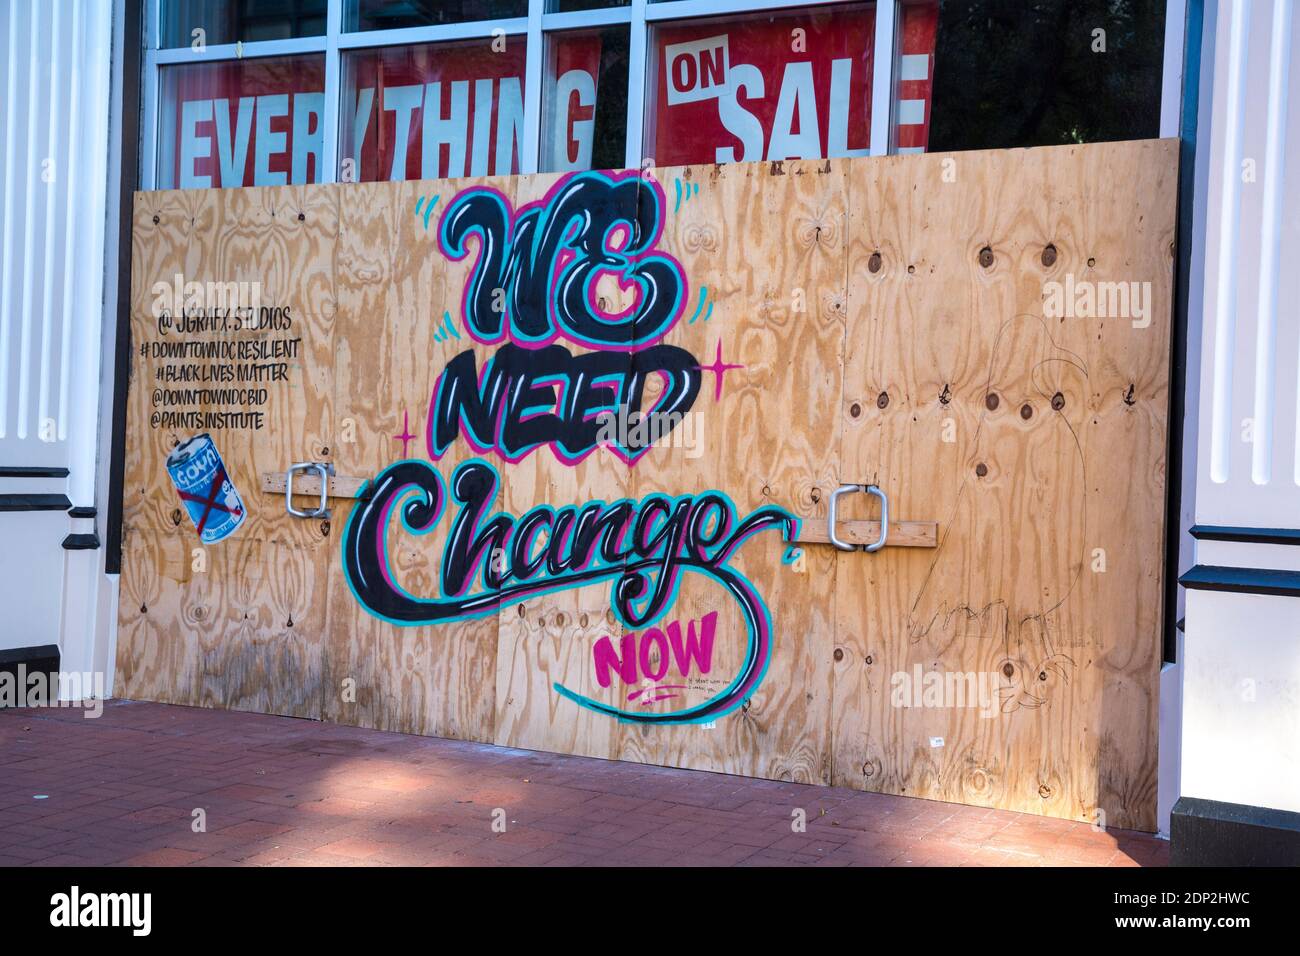 Graffiti ruft zu politischem und sozialem Wandel auf, Washington DC, USA, Oktober 2020. Covid-19 Einschränkungen haben zur Schließung des Geschäfts geführt. Stockfoto